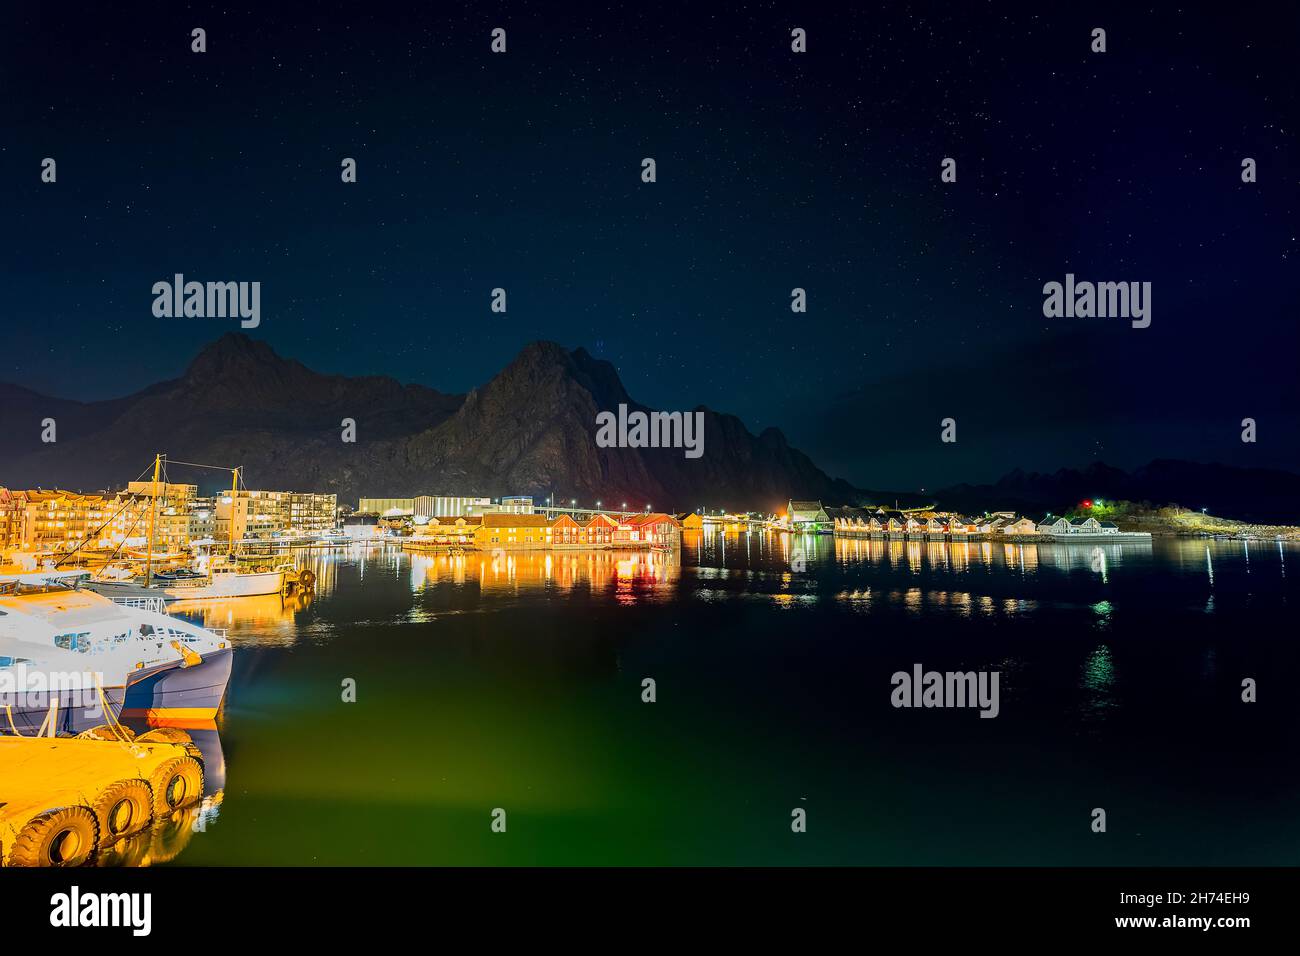 Svolvær auf den Lofoten, Norwegen, bei Nacht mit dem Djevelporten im Hintergrund. die beleuchtete Stadt spiegelt sich im Hafenbecken mit Schiffen Stock Photo